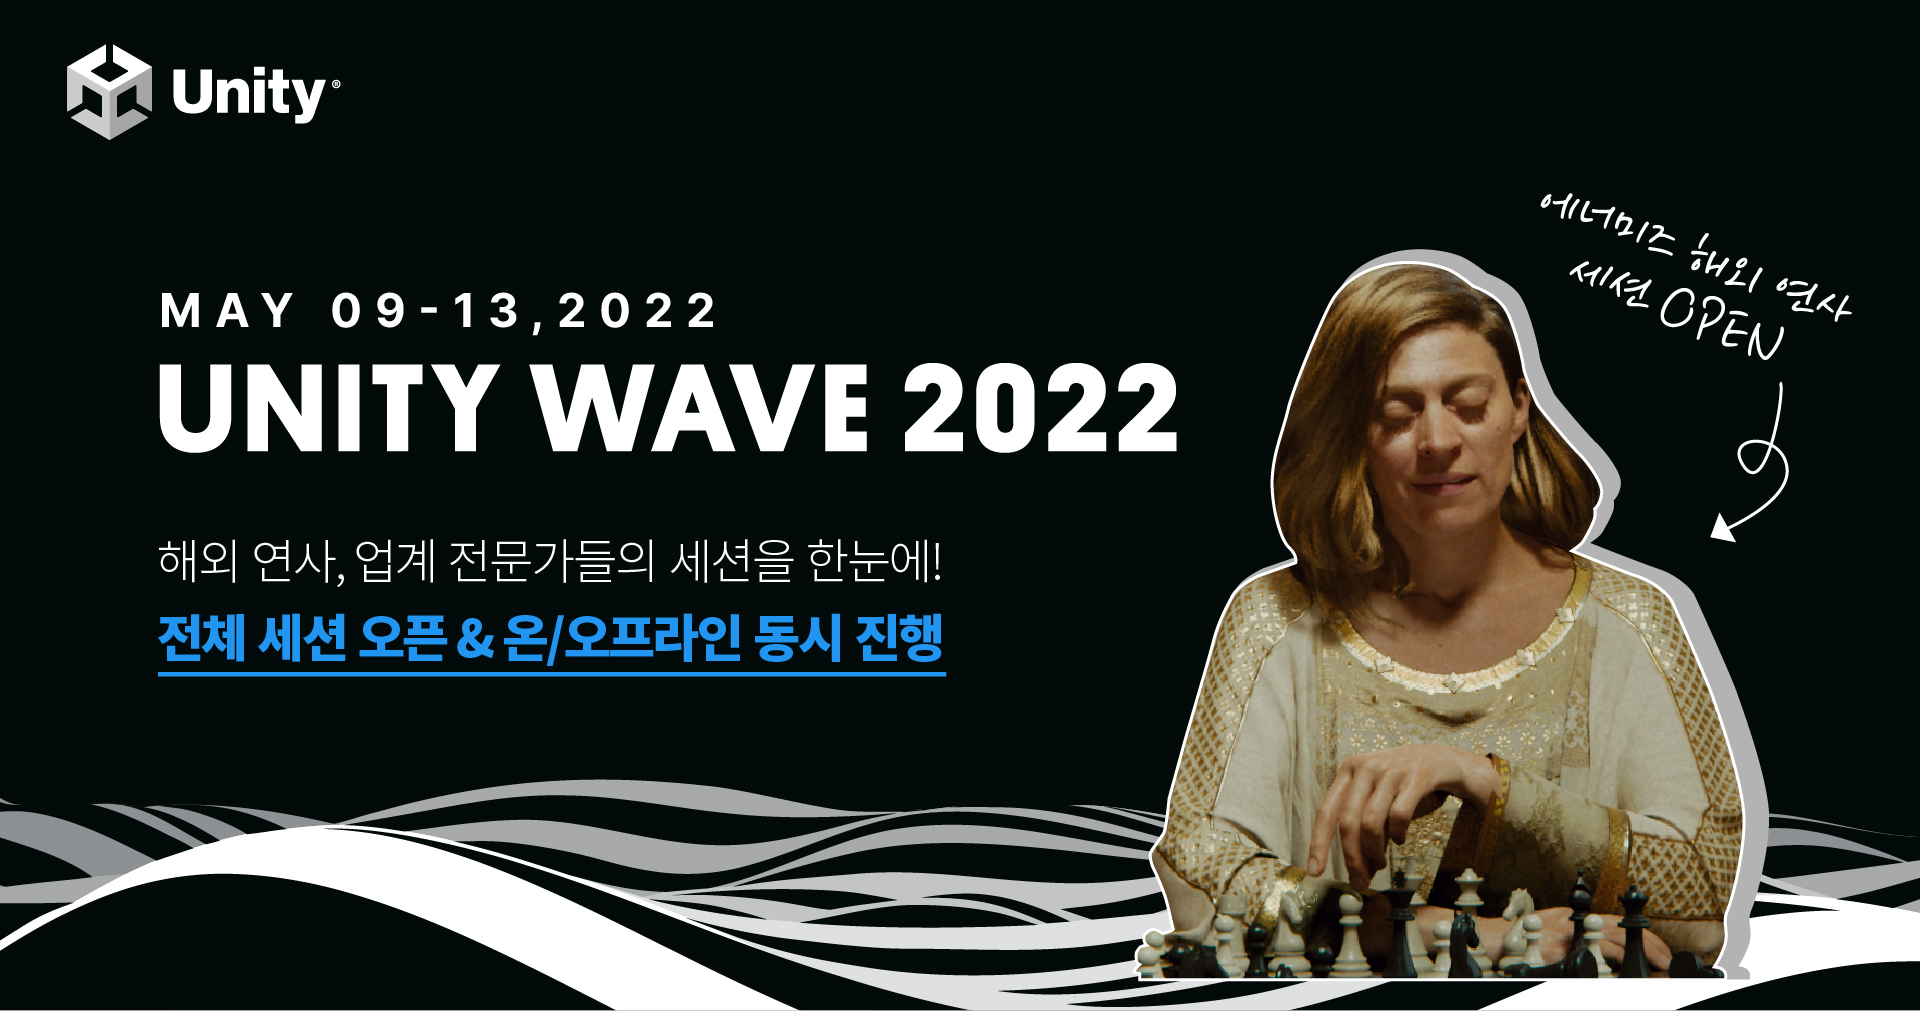 0426 [메인이미지] 유니티가 ‘유니티 웨이브 2022’ 전체 세션을 공개했다.jpg